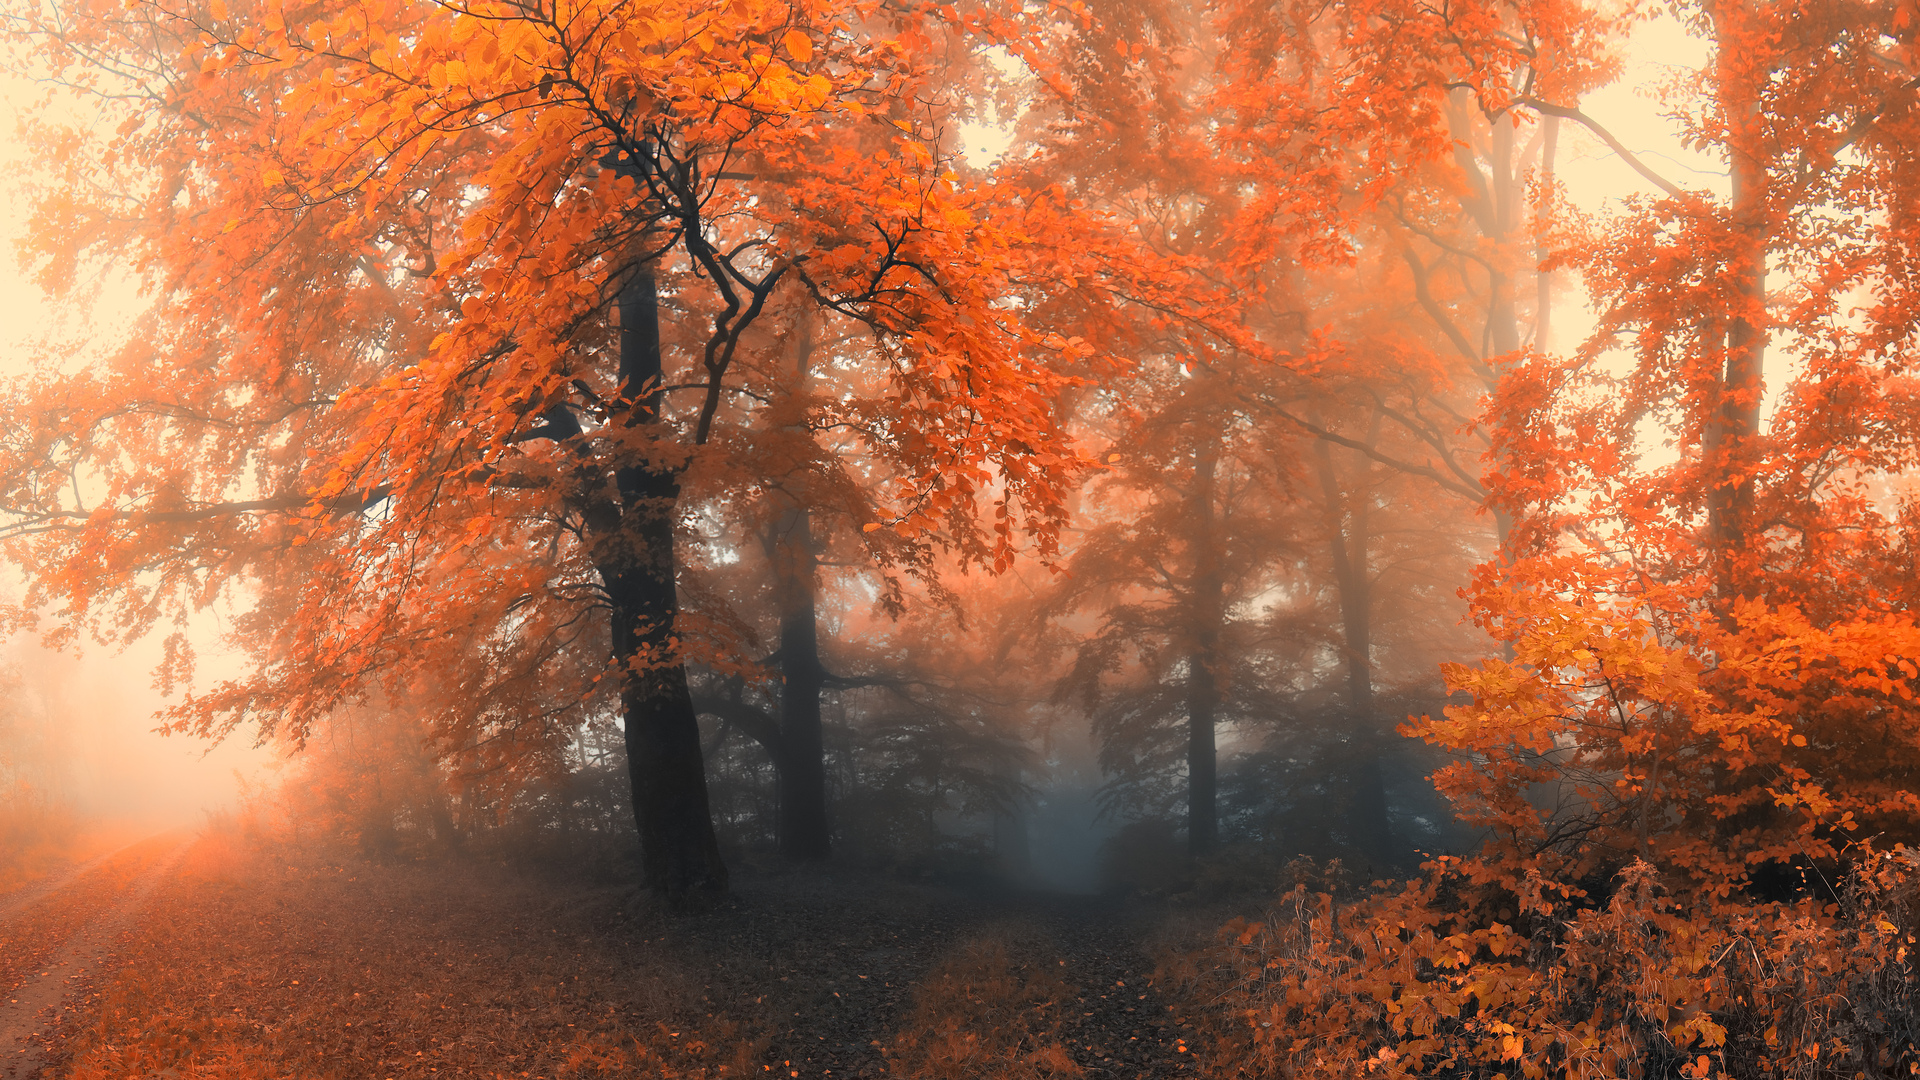 Скачать обои бесплатно Лес, Дерево, Туман, Падать, Земля/природа, Оранжевый Цвет) картинка на рабочий стол ПК